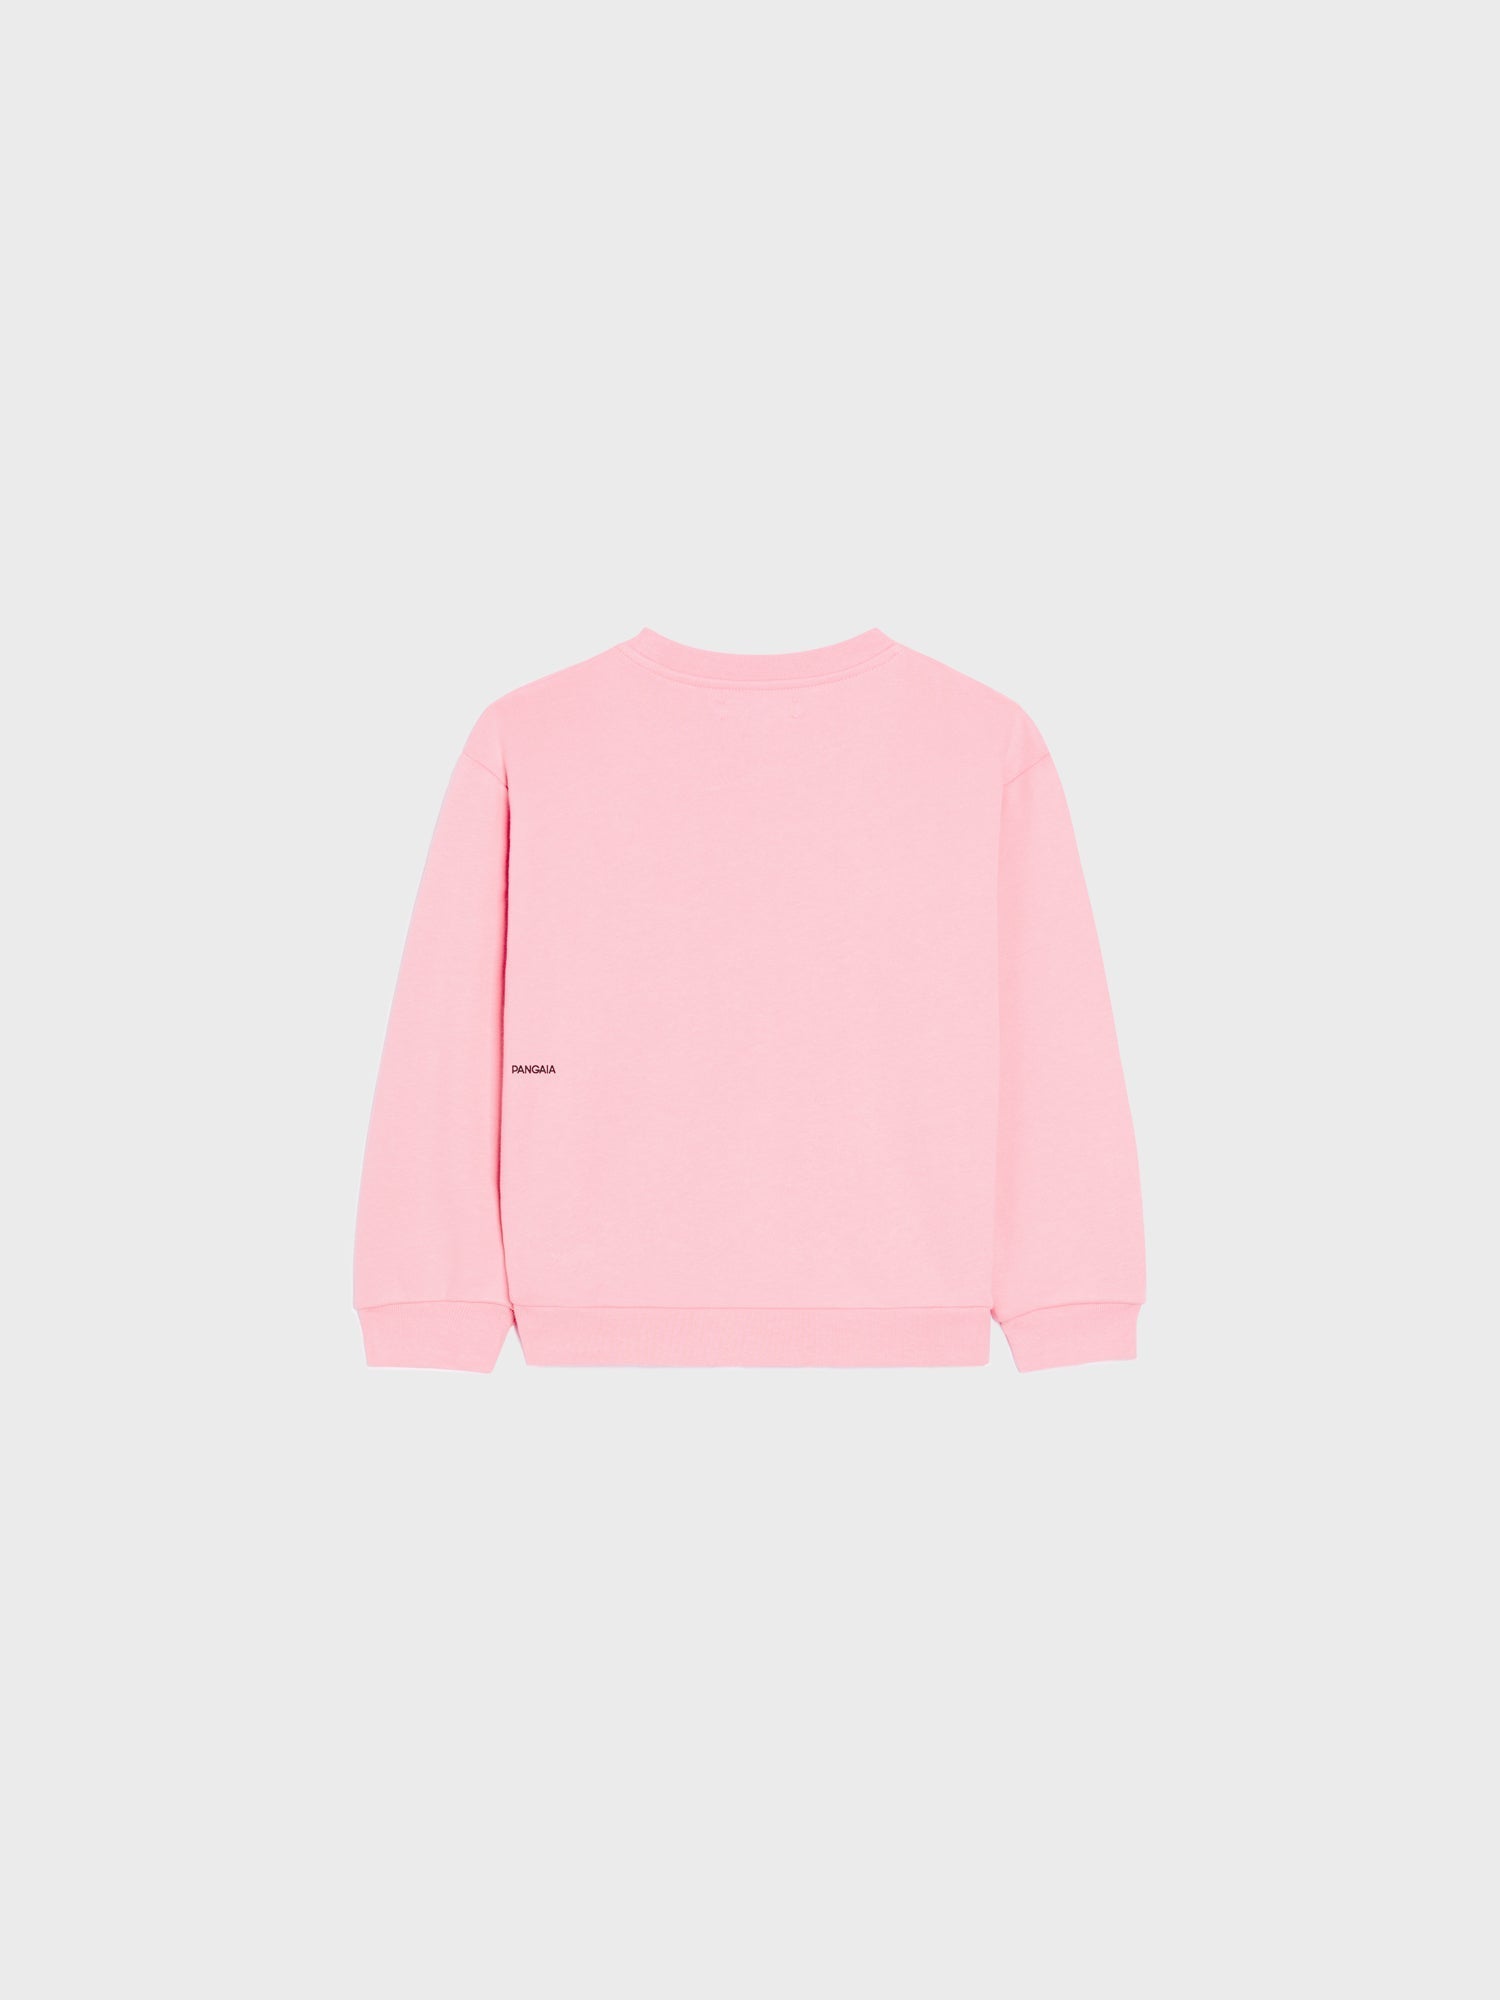 Sakura Kids Organic Cotton Sweatshirt Pink